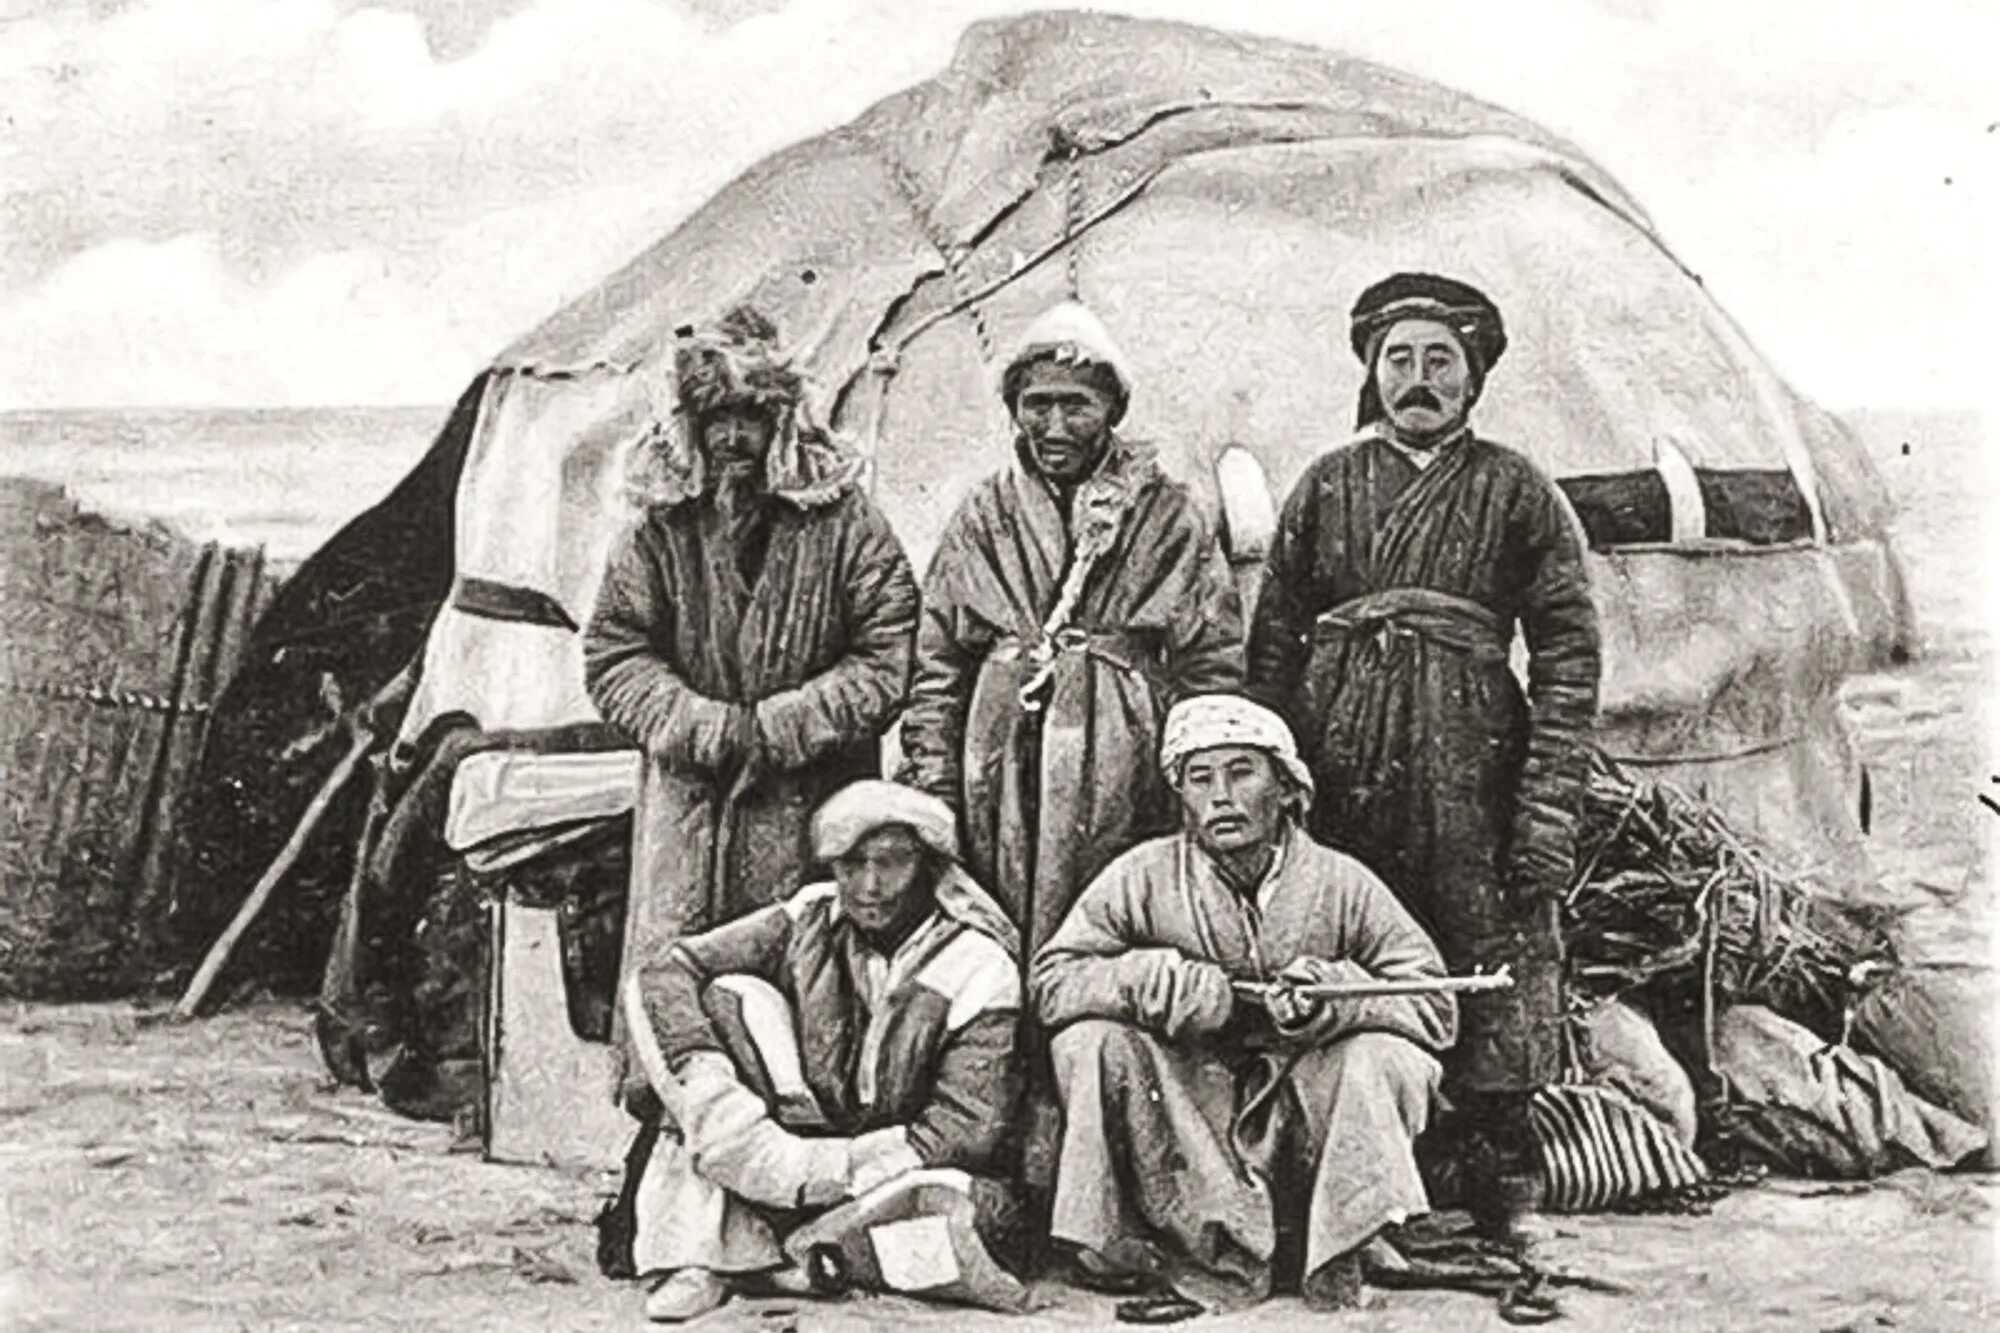 Появление казахов. Юрты алтайцев 19 век. Киргизские кочевники 19 век. Киргизы Азии 19 век. Казахская степь 19 век.